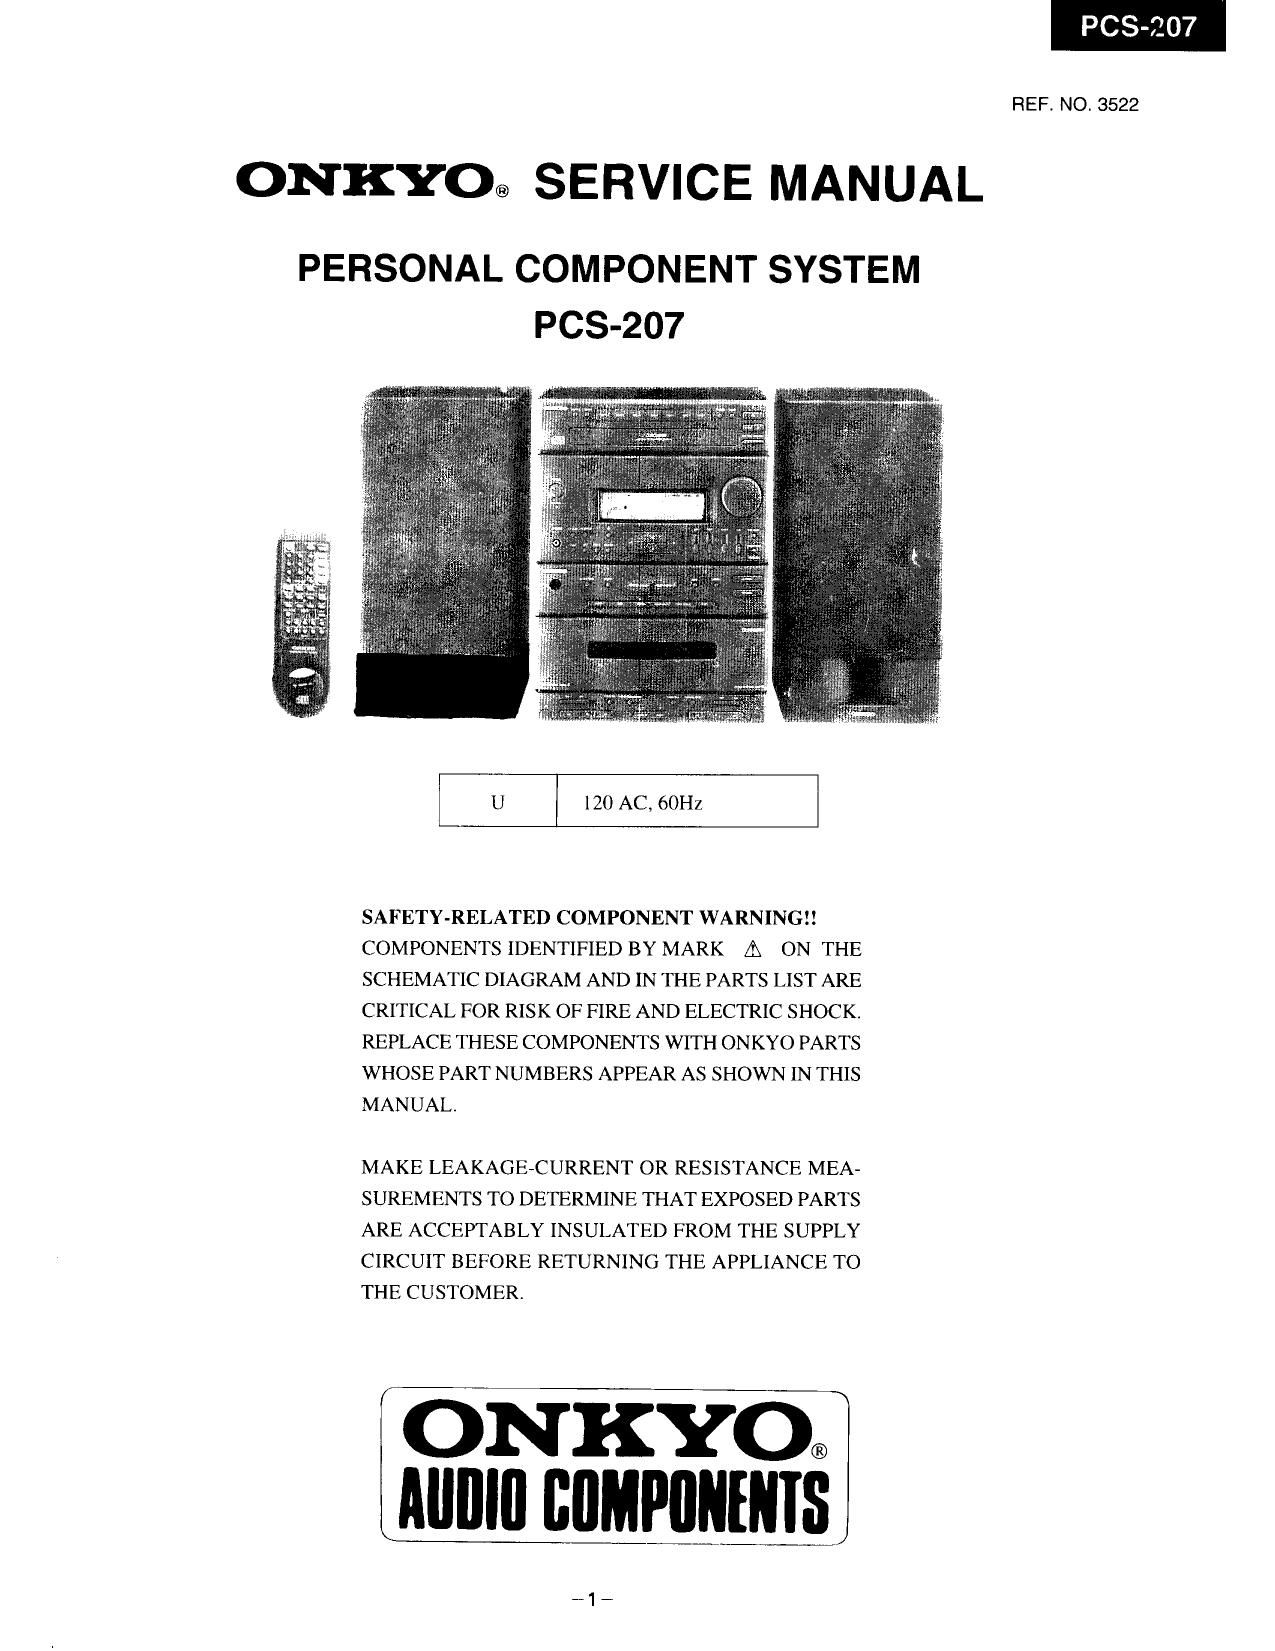 Onkyo PCS 207 Service Manual 2